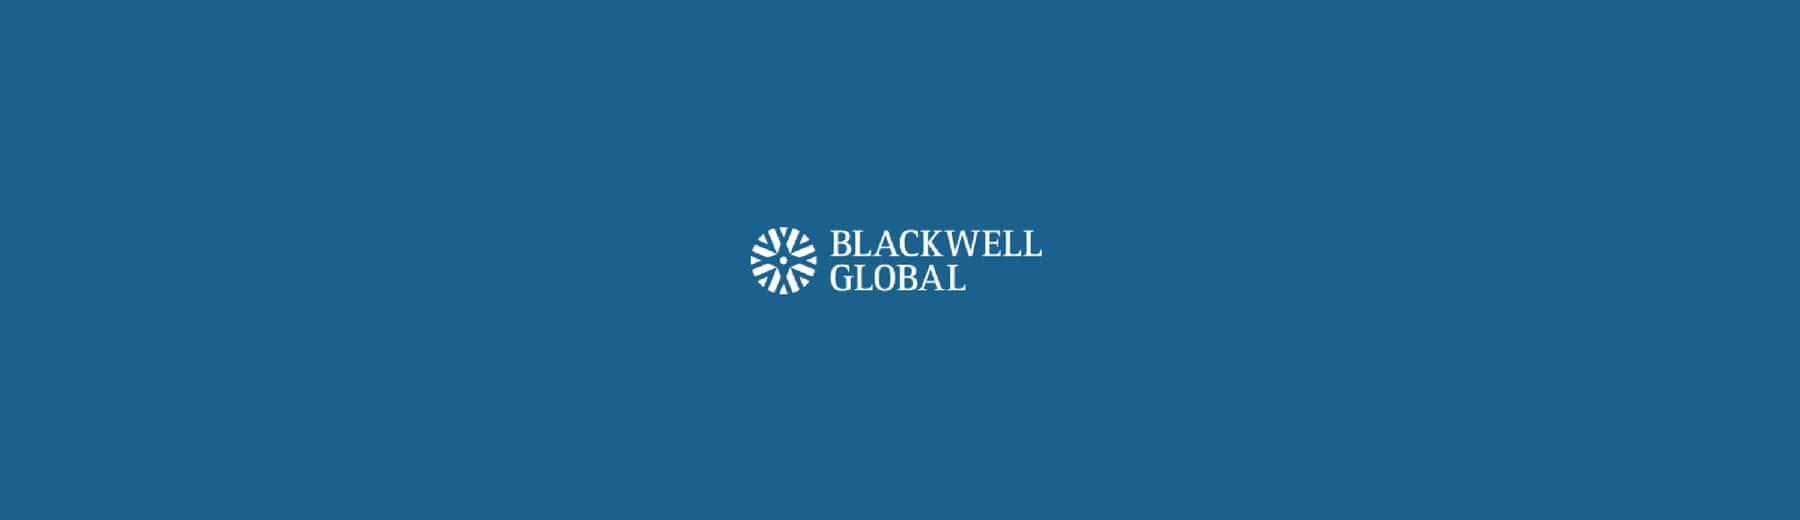 header-blackwell-global